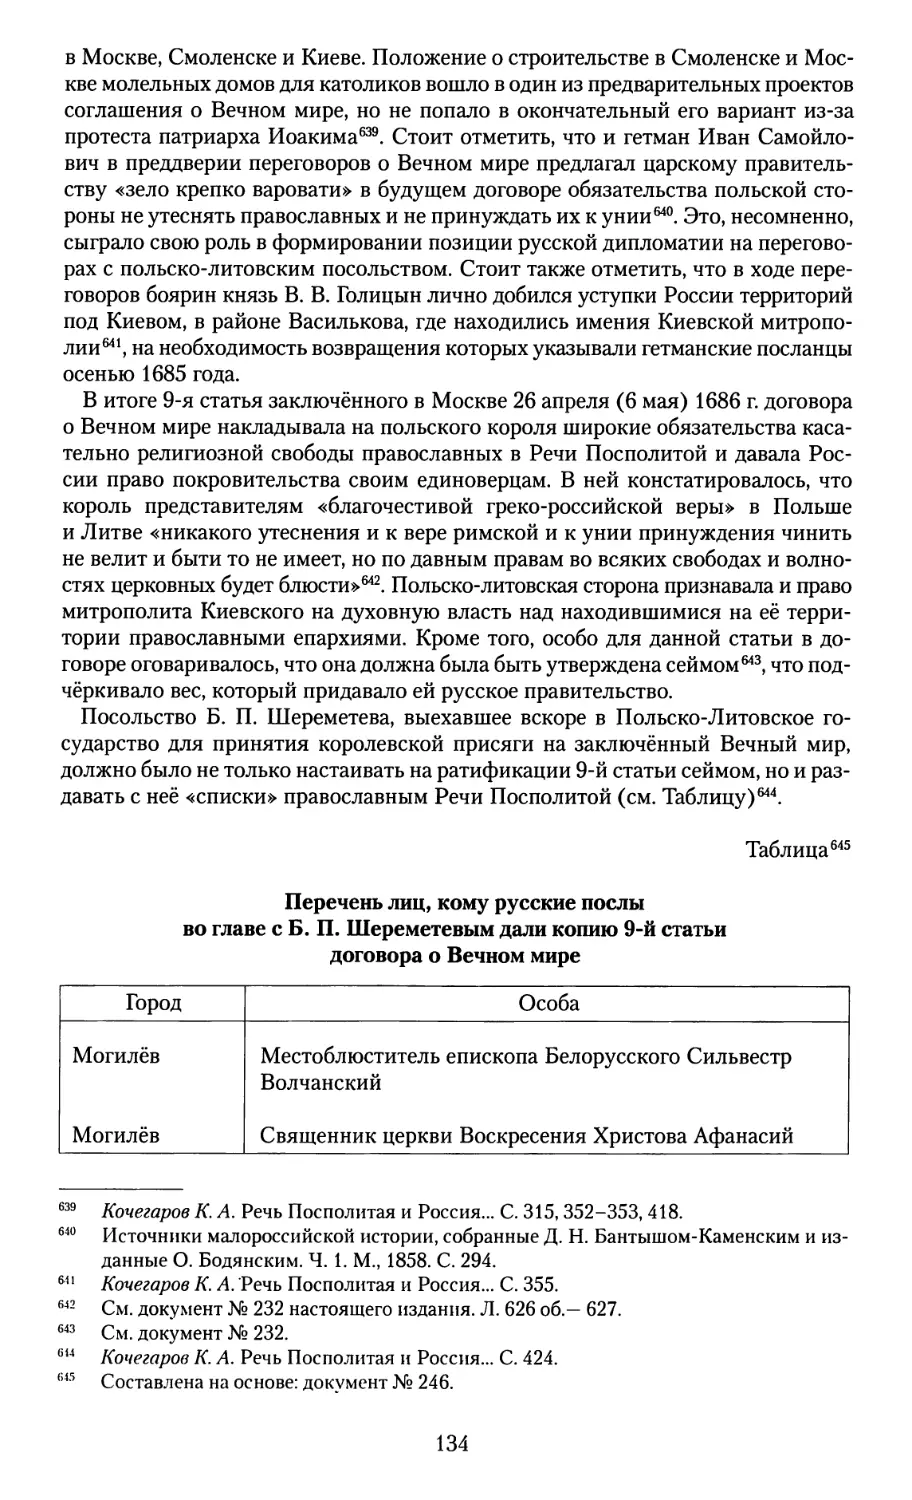 Перечень лиц, кому русские послы во главе с Б. П. Шереметевым дали копию 9-й статьи договора о Вечном мире